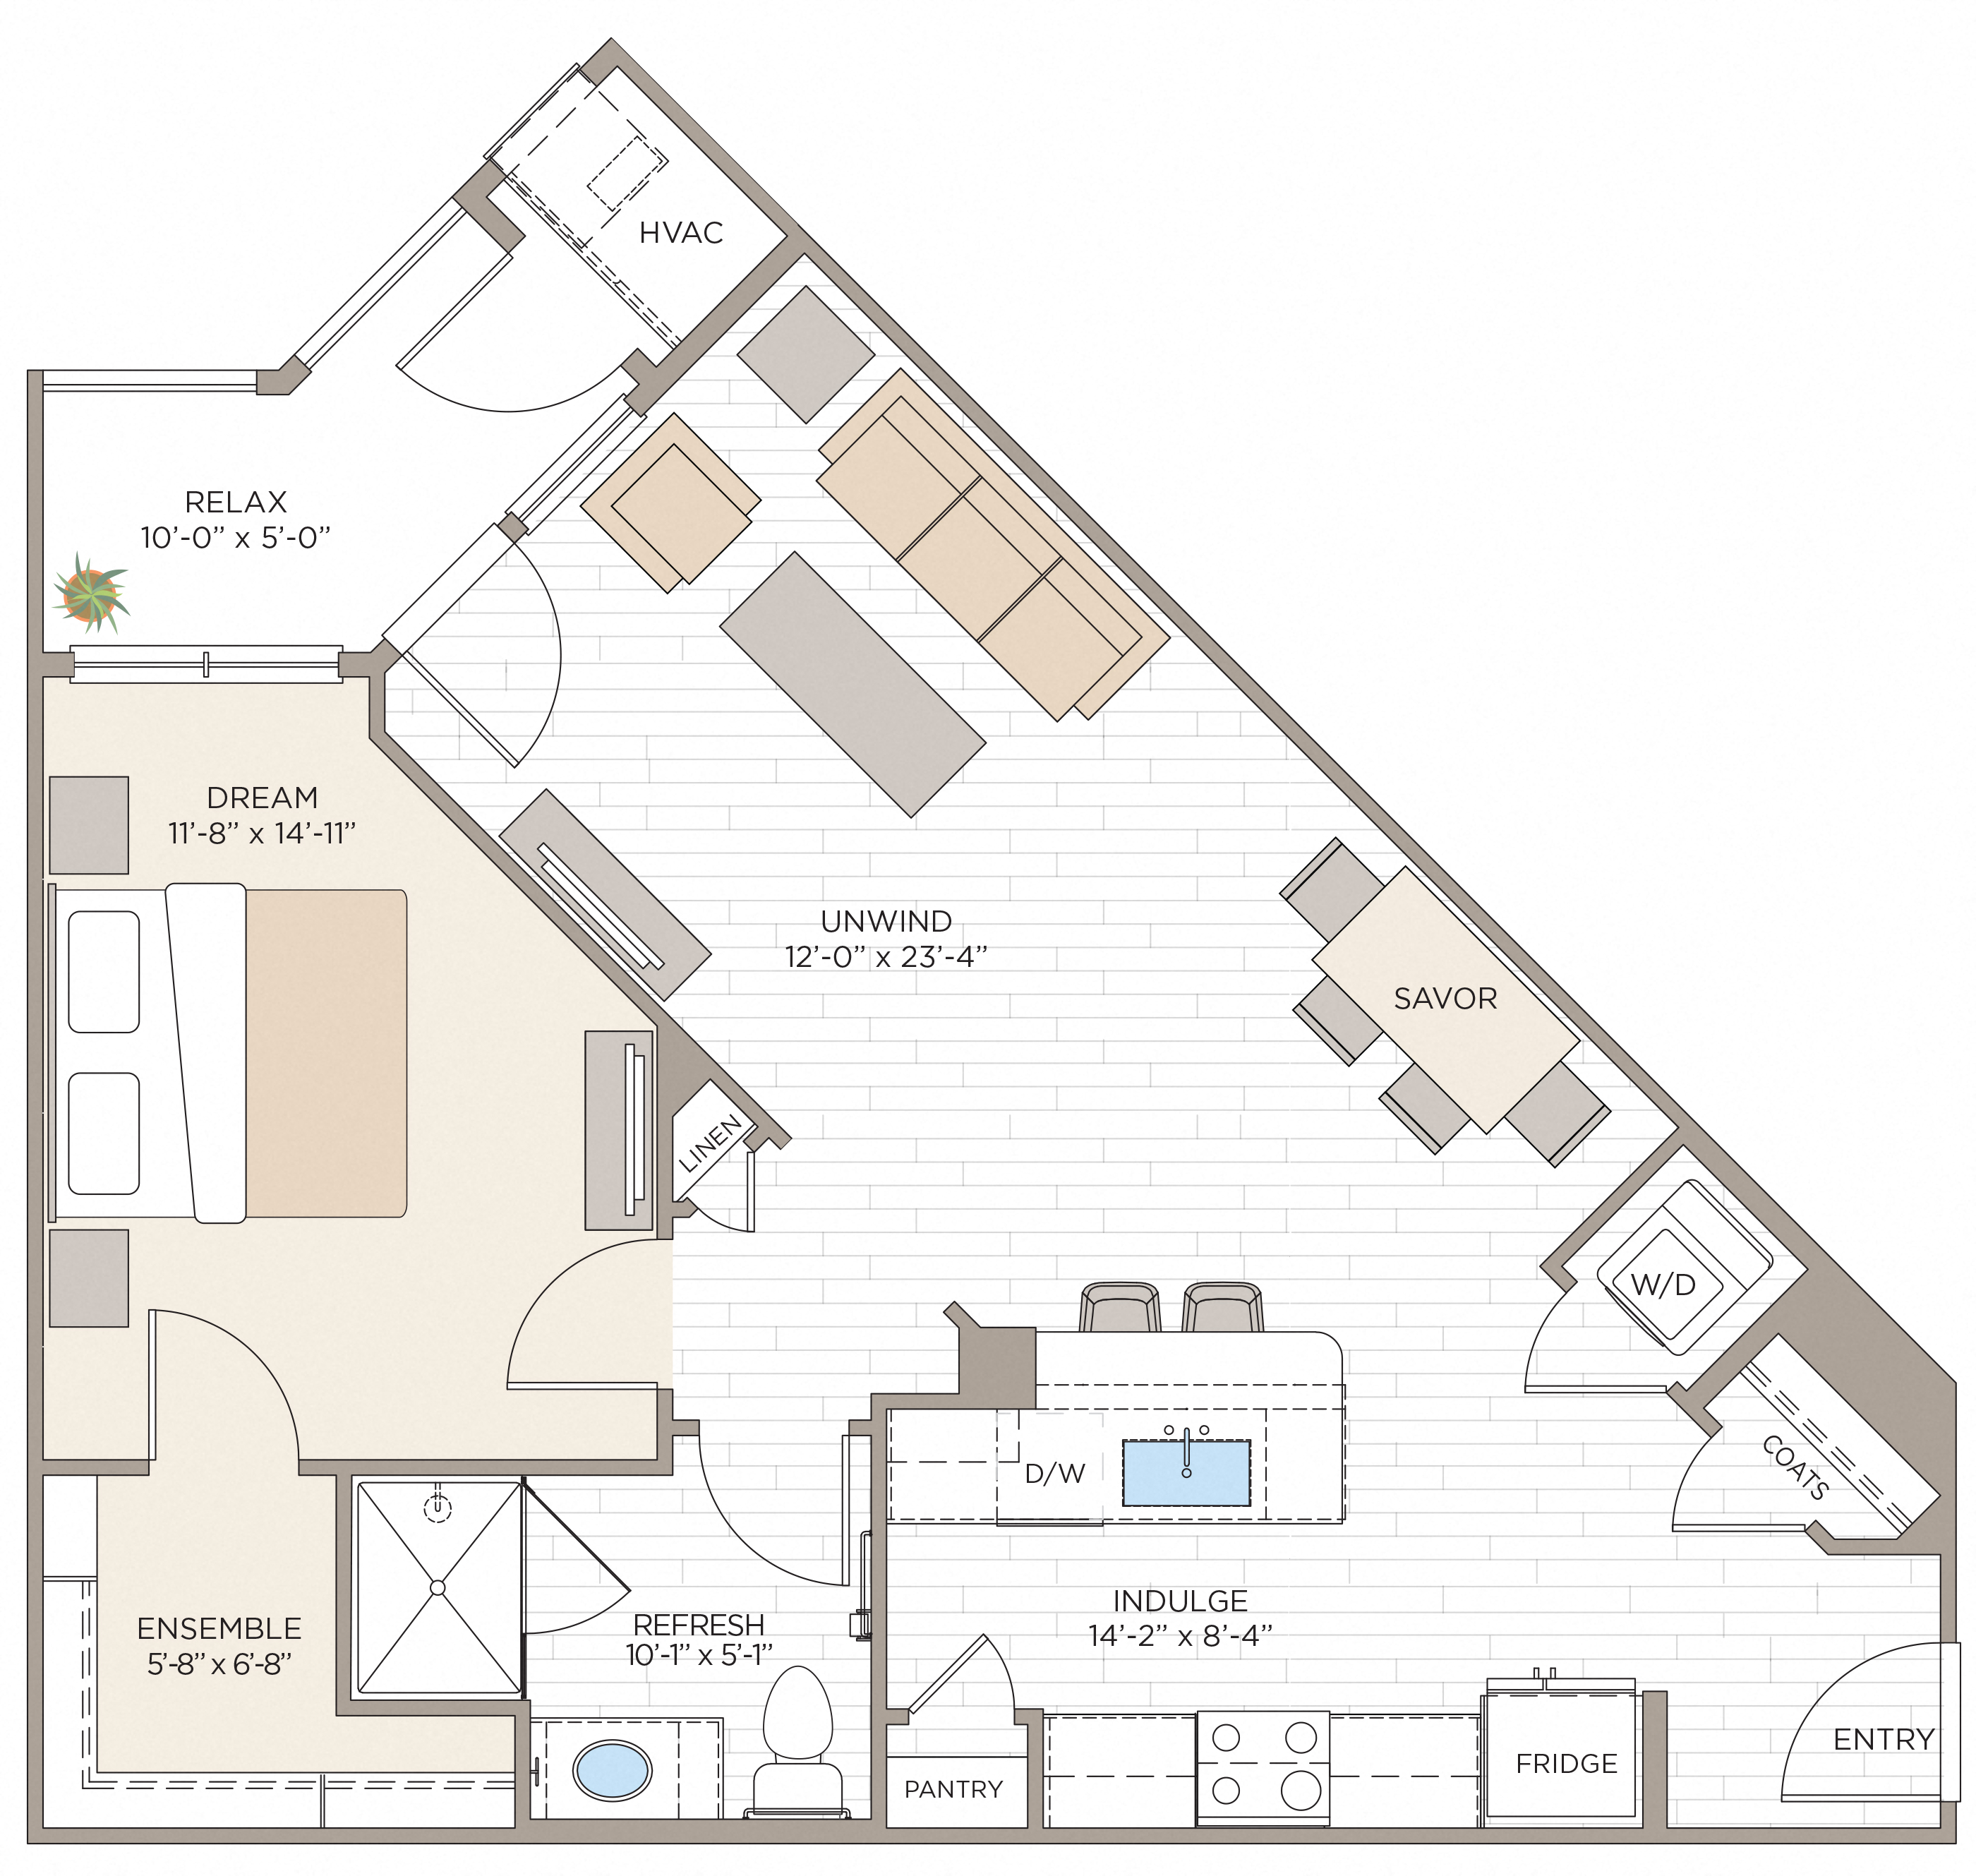 Floorplan for Unit #A1C, 1  bedroom unit at Halstead Maynard Crossing